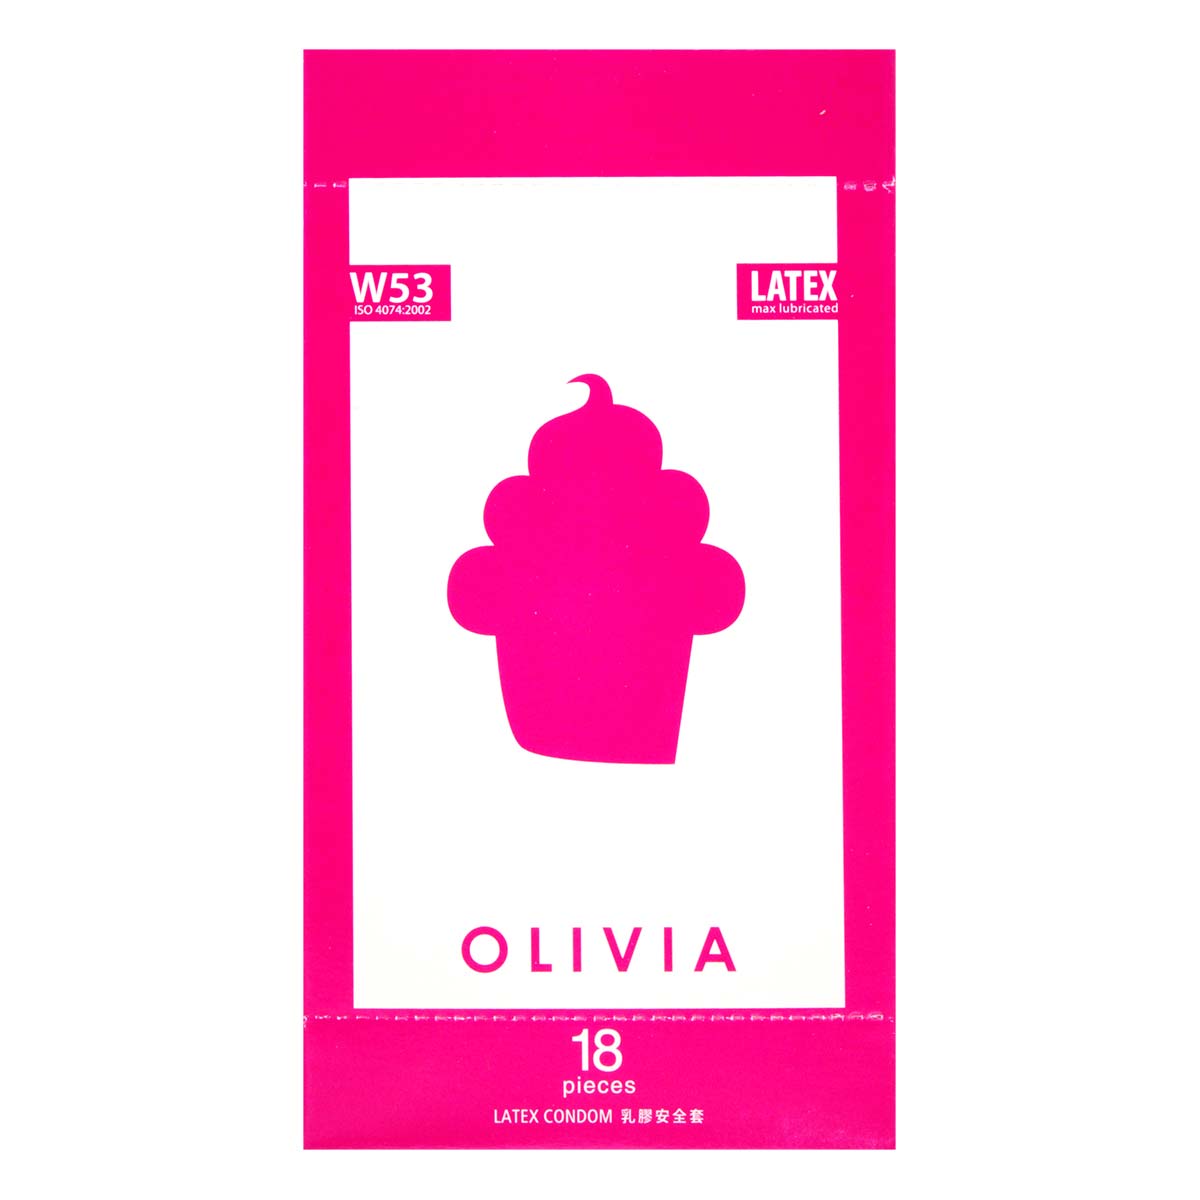 奥莉维亚 W53 系列最多润滑剂型 18 片装 乳胶安全套-p_2